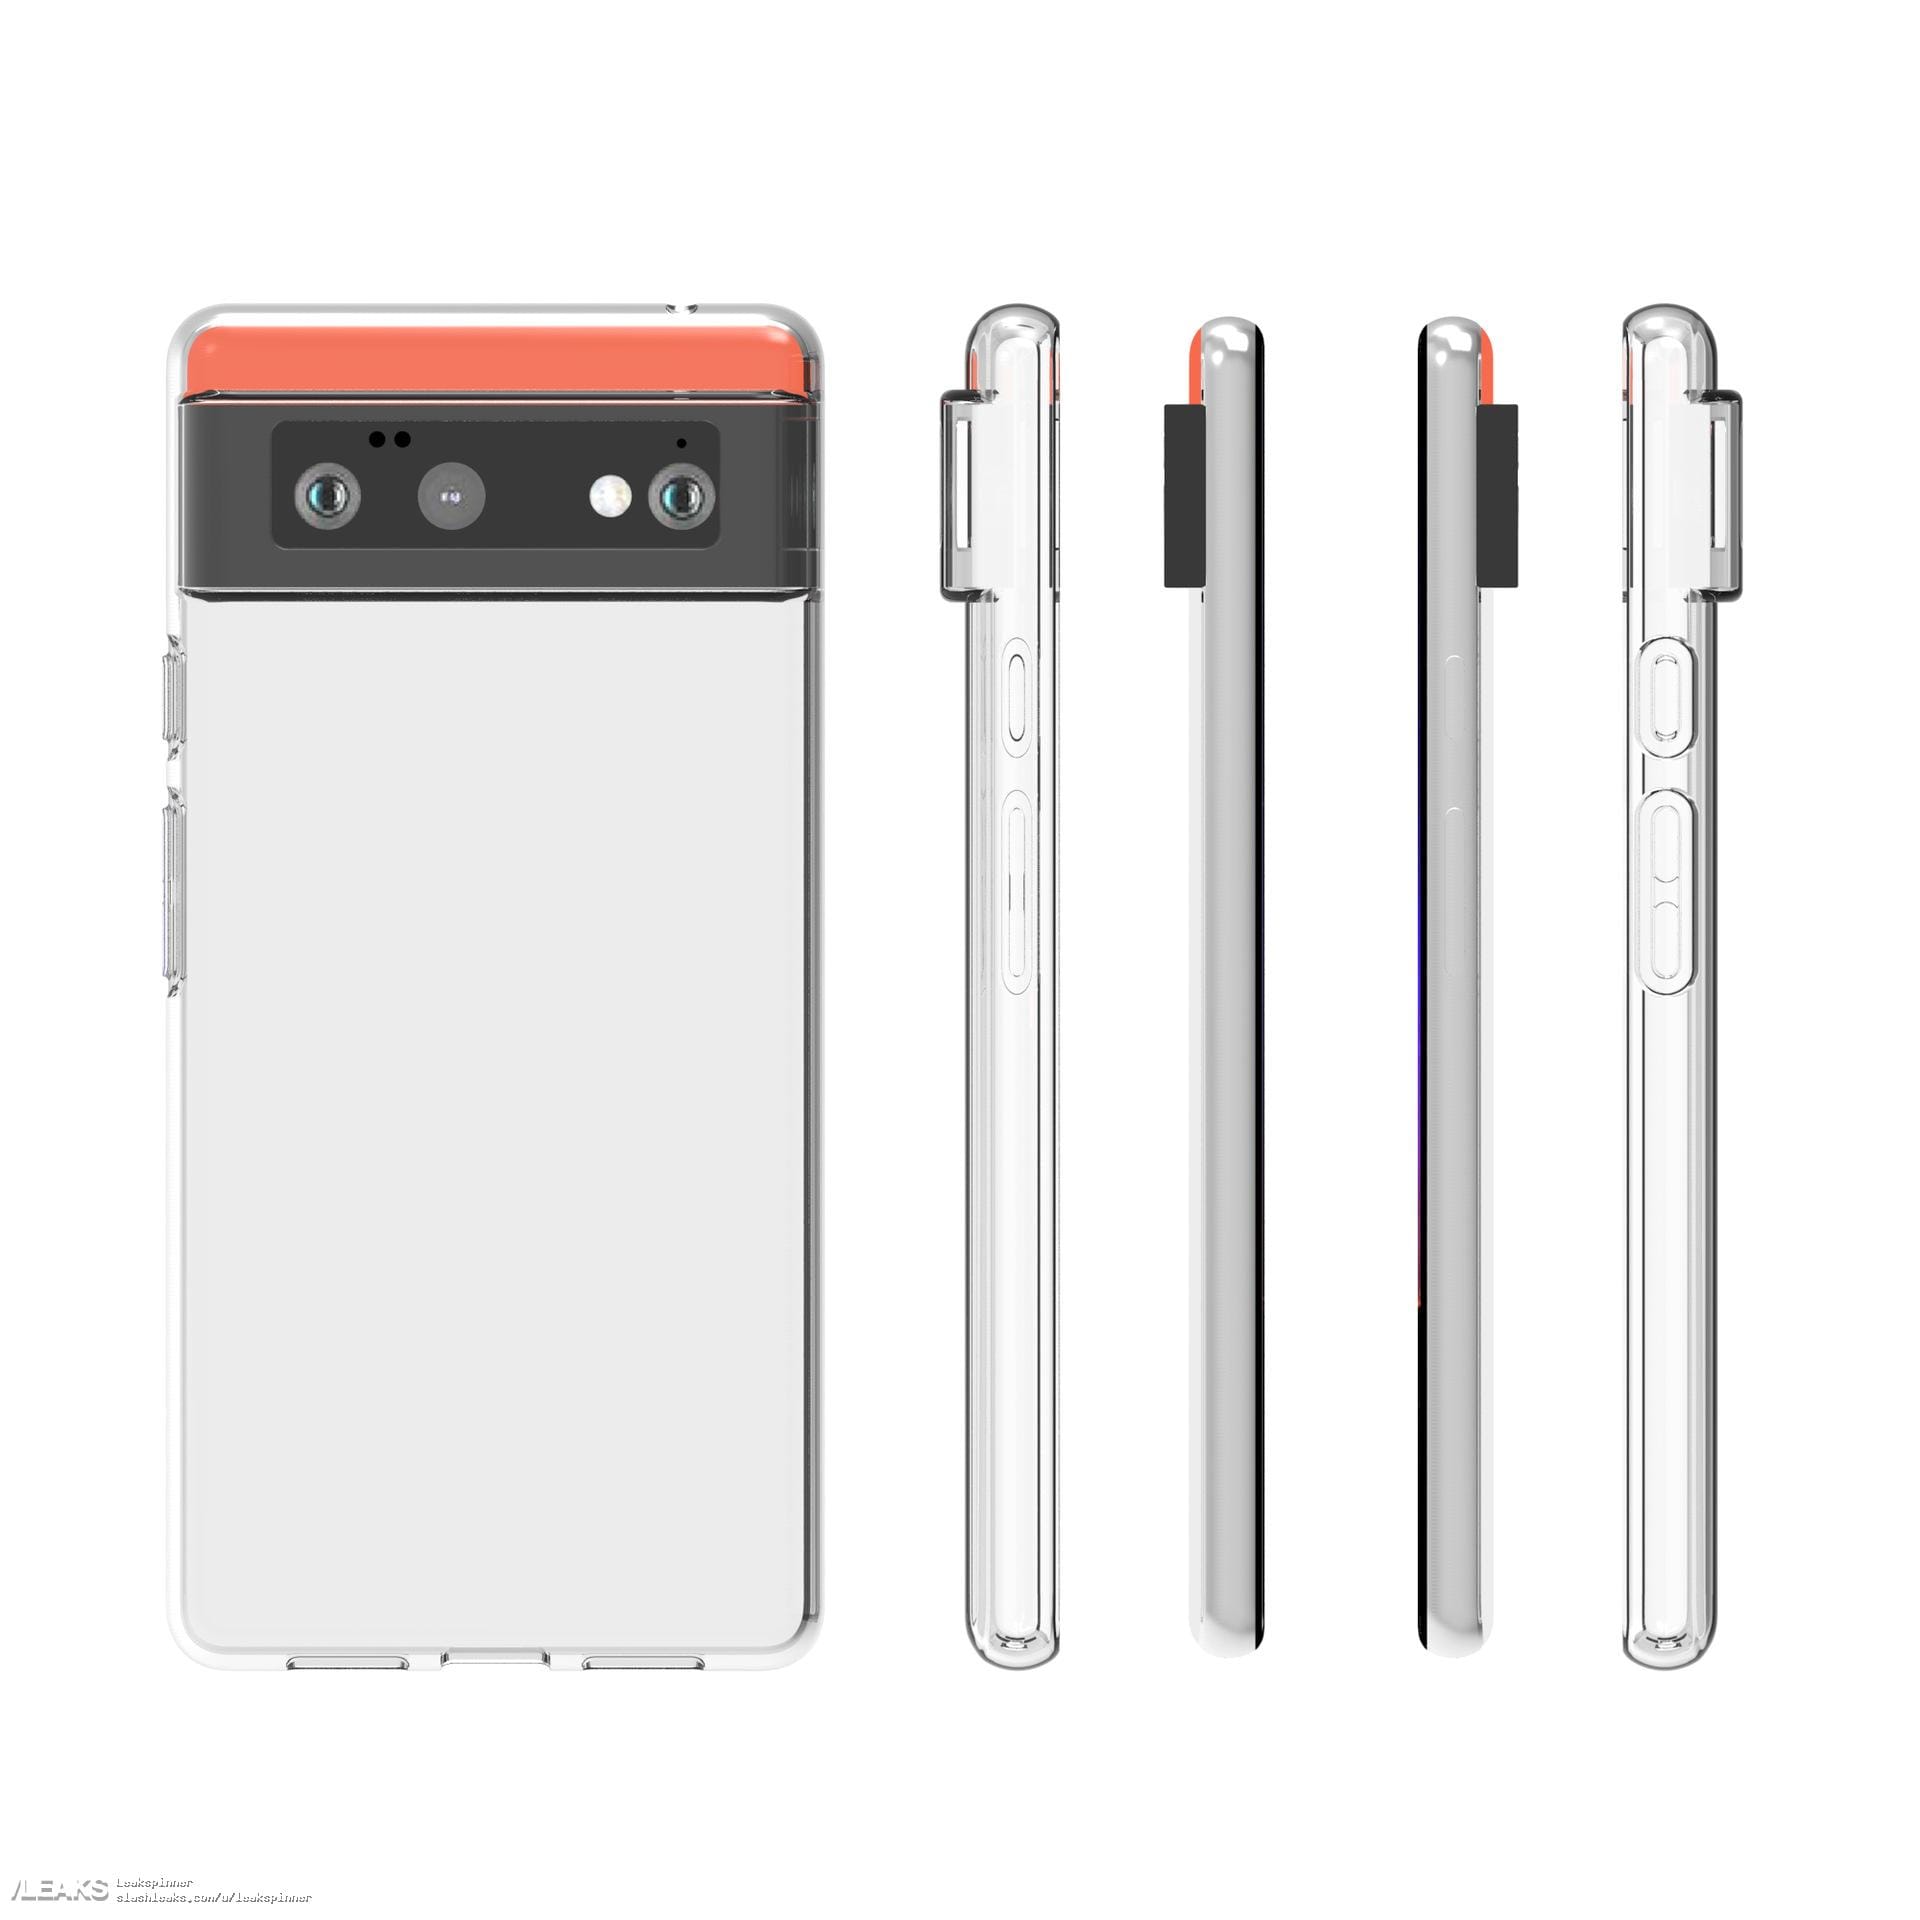 Las fundas protectoras para Google Pixel 6 confirman el diseño ya surgido de este smartphone (foto) (actualizado)